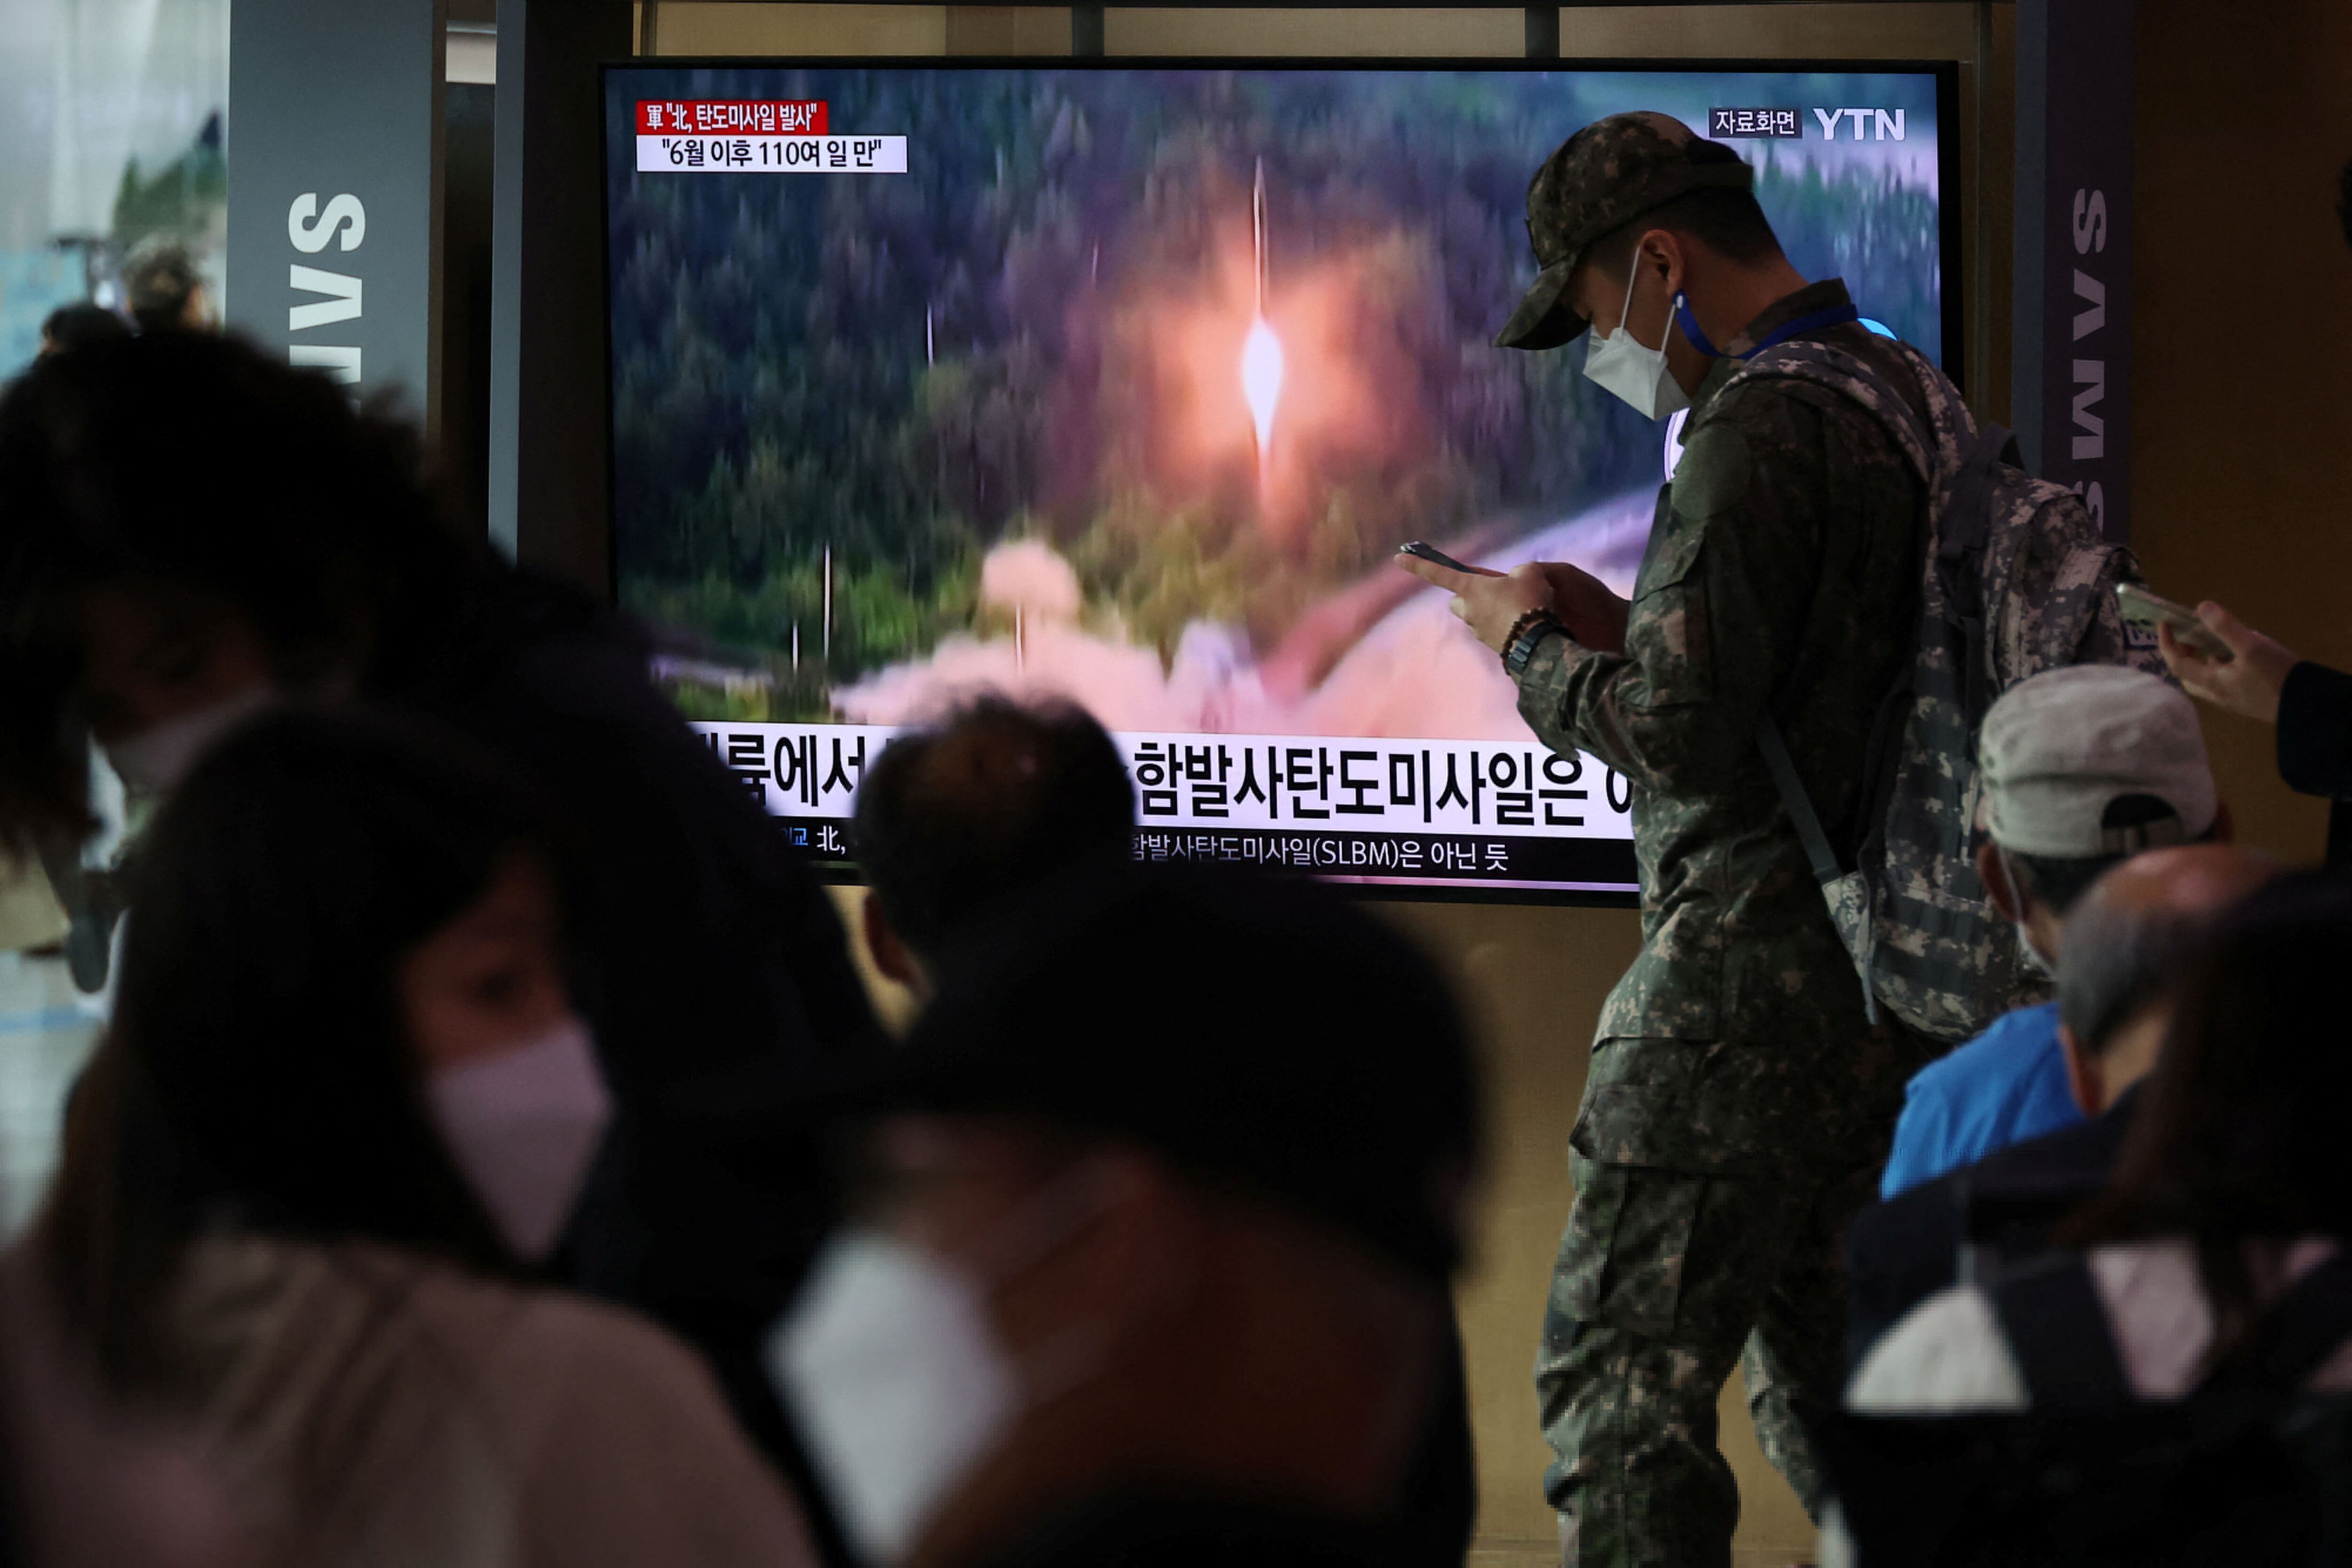 Corea del Norte lanzó otro misil balístico: Japón le pidió a la población que evacúe y busque refugio